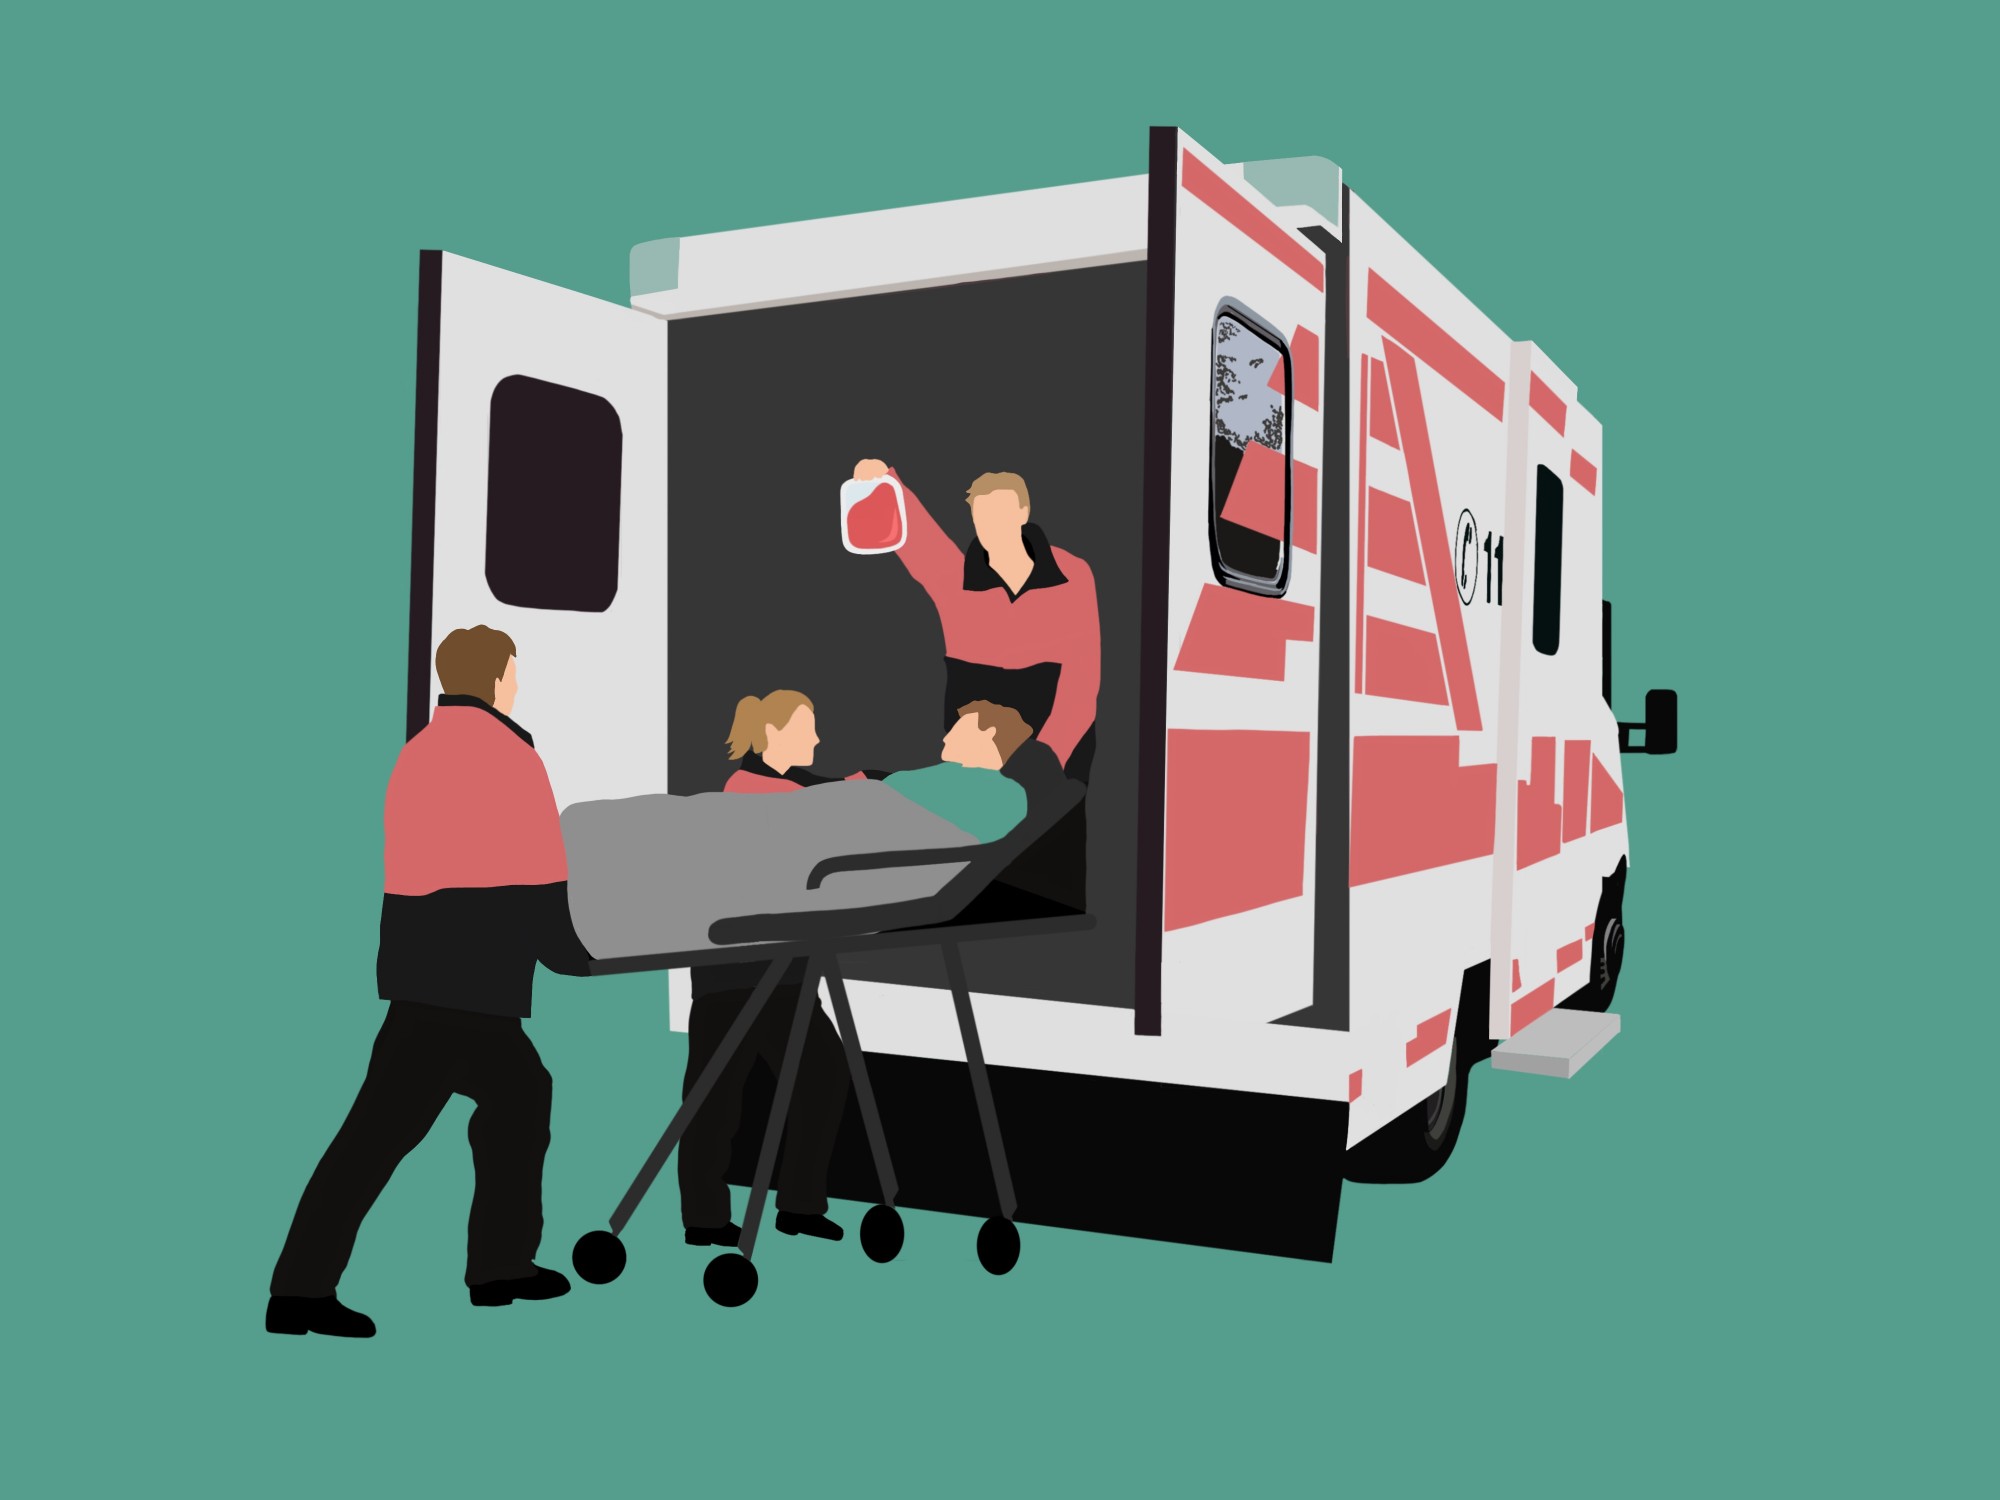 Illustration eines Mannes, der auf einer Trage von Sanitätern in einen Rettungswagen gehoben wird und dabei ein Blutinfusion bekommt